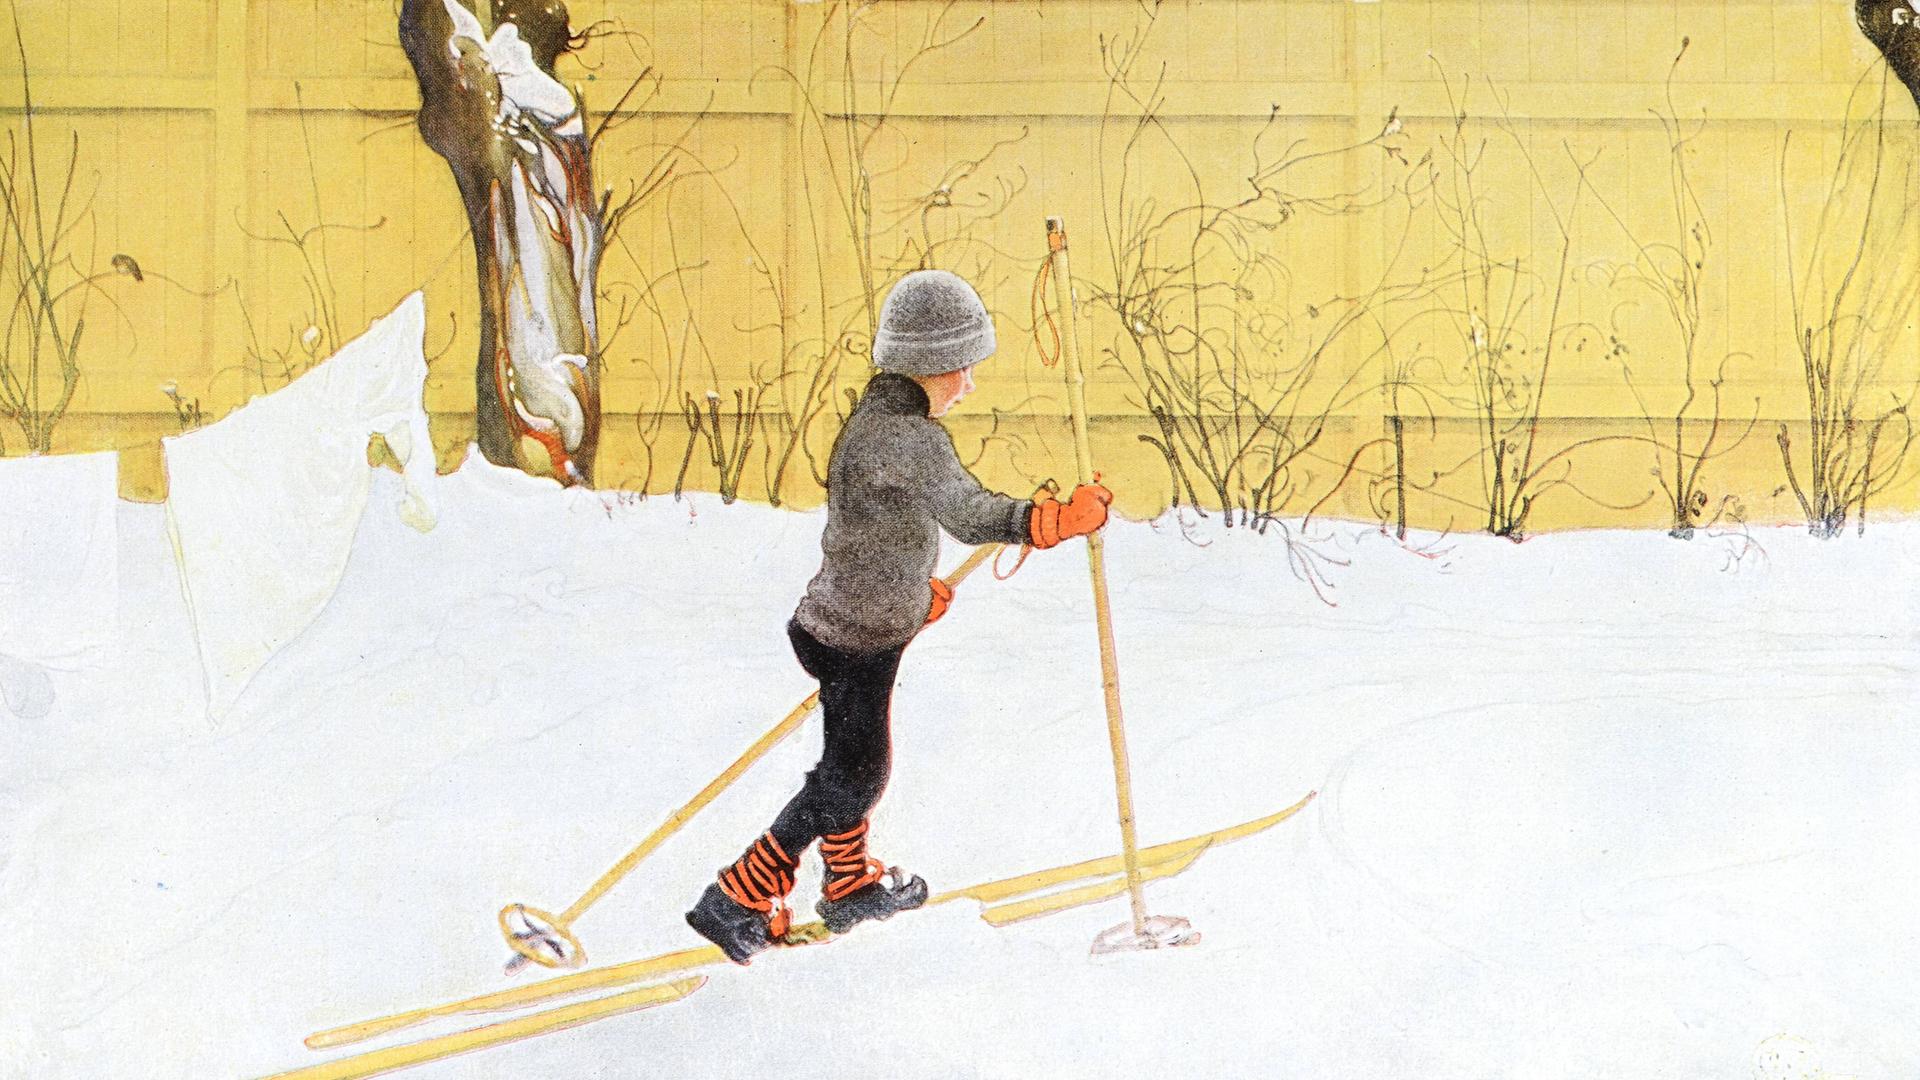 Kleiner Junge mit Skiern und Stöckern in einer Winterlandschaft. Illustration von 1917 zu Carl Larssons "Das Haus in der Sonne".